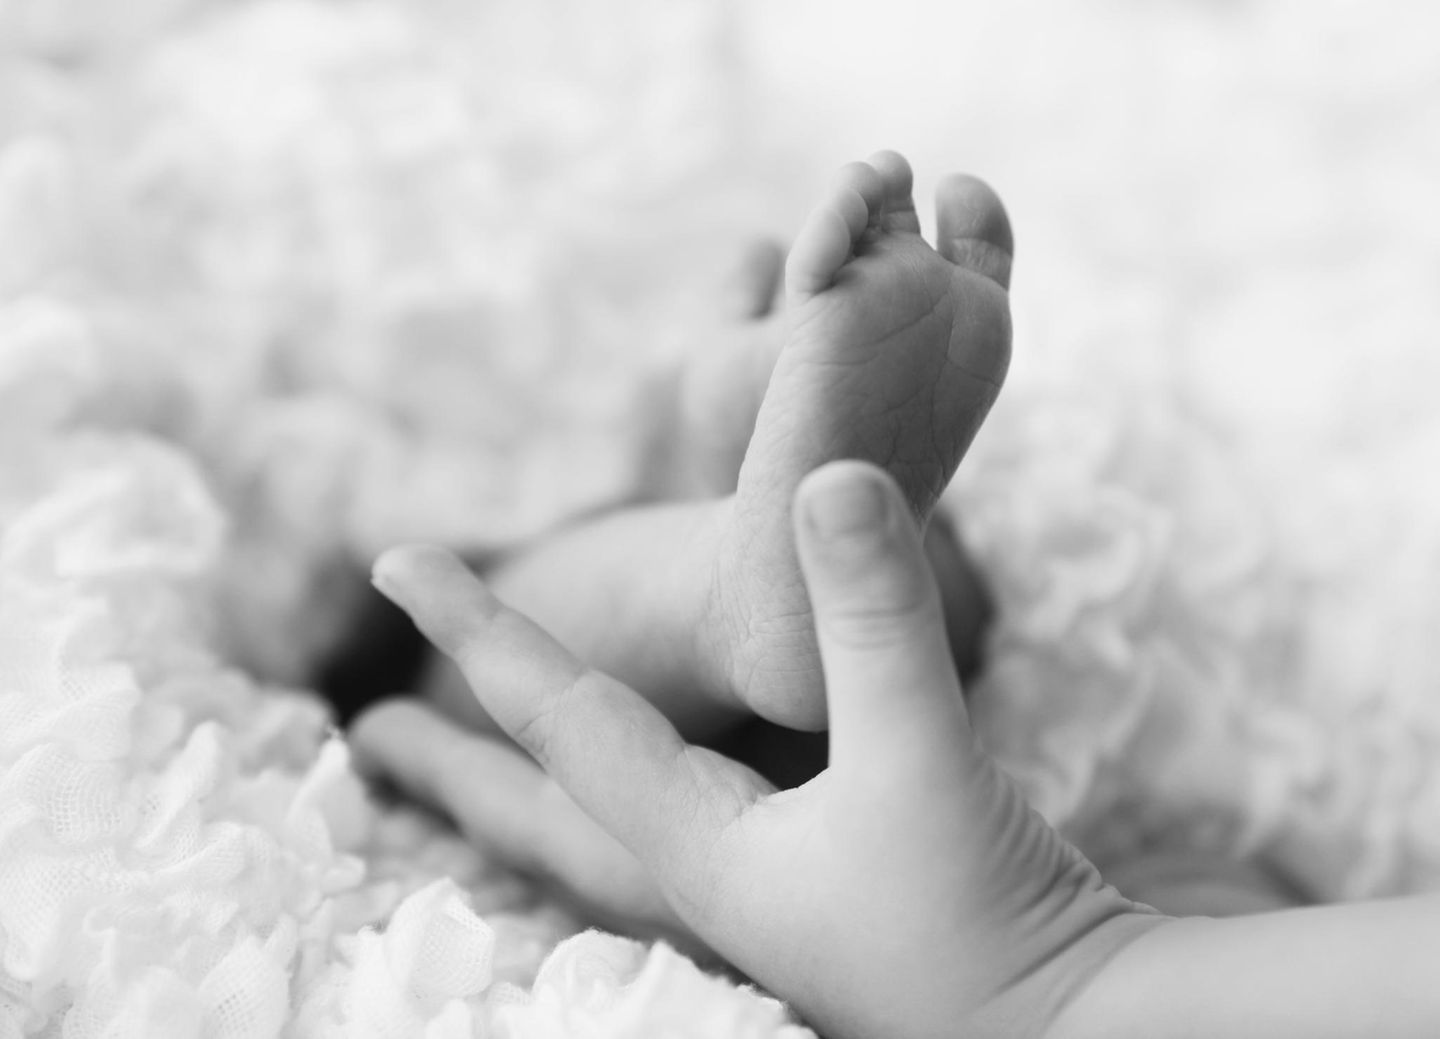 Babyfotografie: 9 zauberhafte Bilder der ersten Momente mit Kind